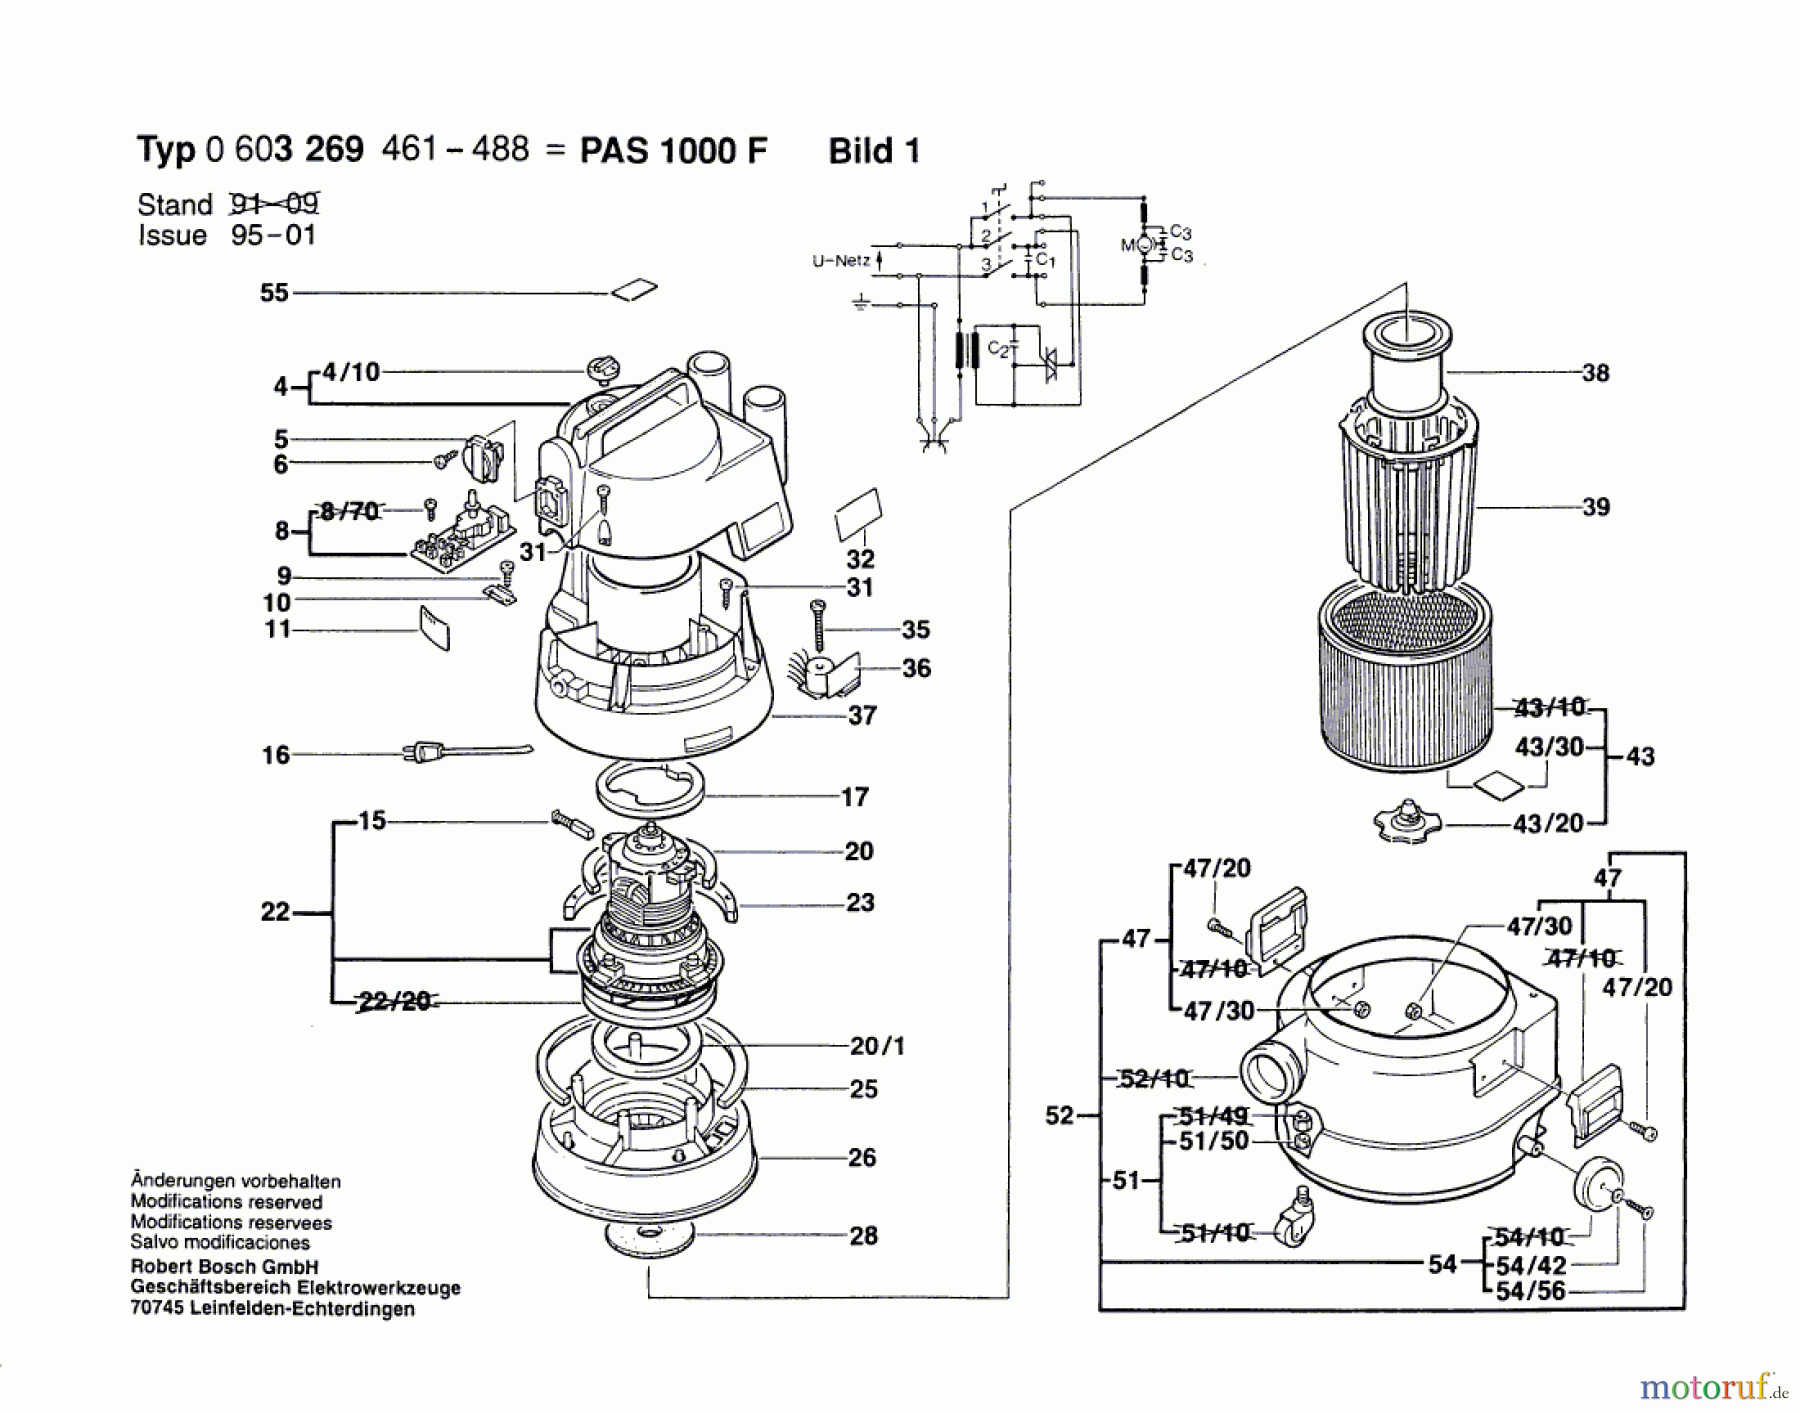  Bosch Werkzeug Allzwecksauger PAS 1000 F Seite 1